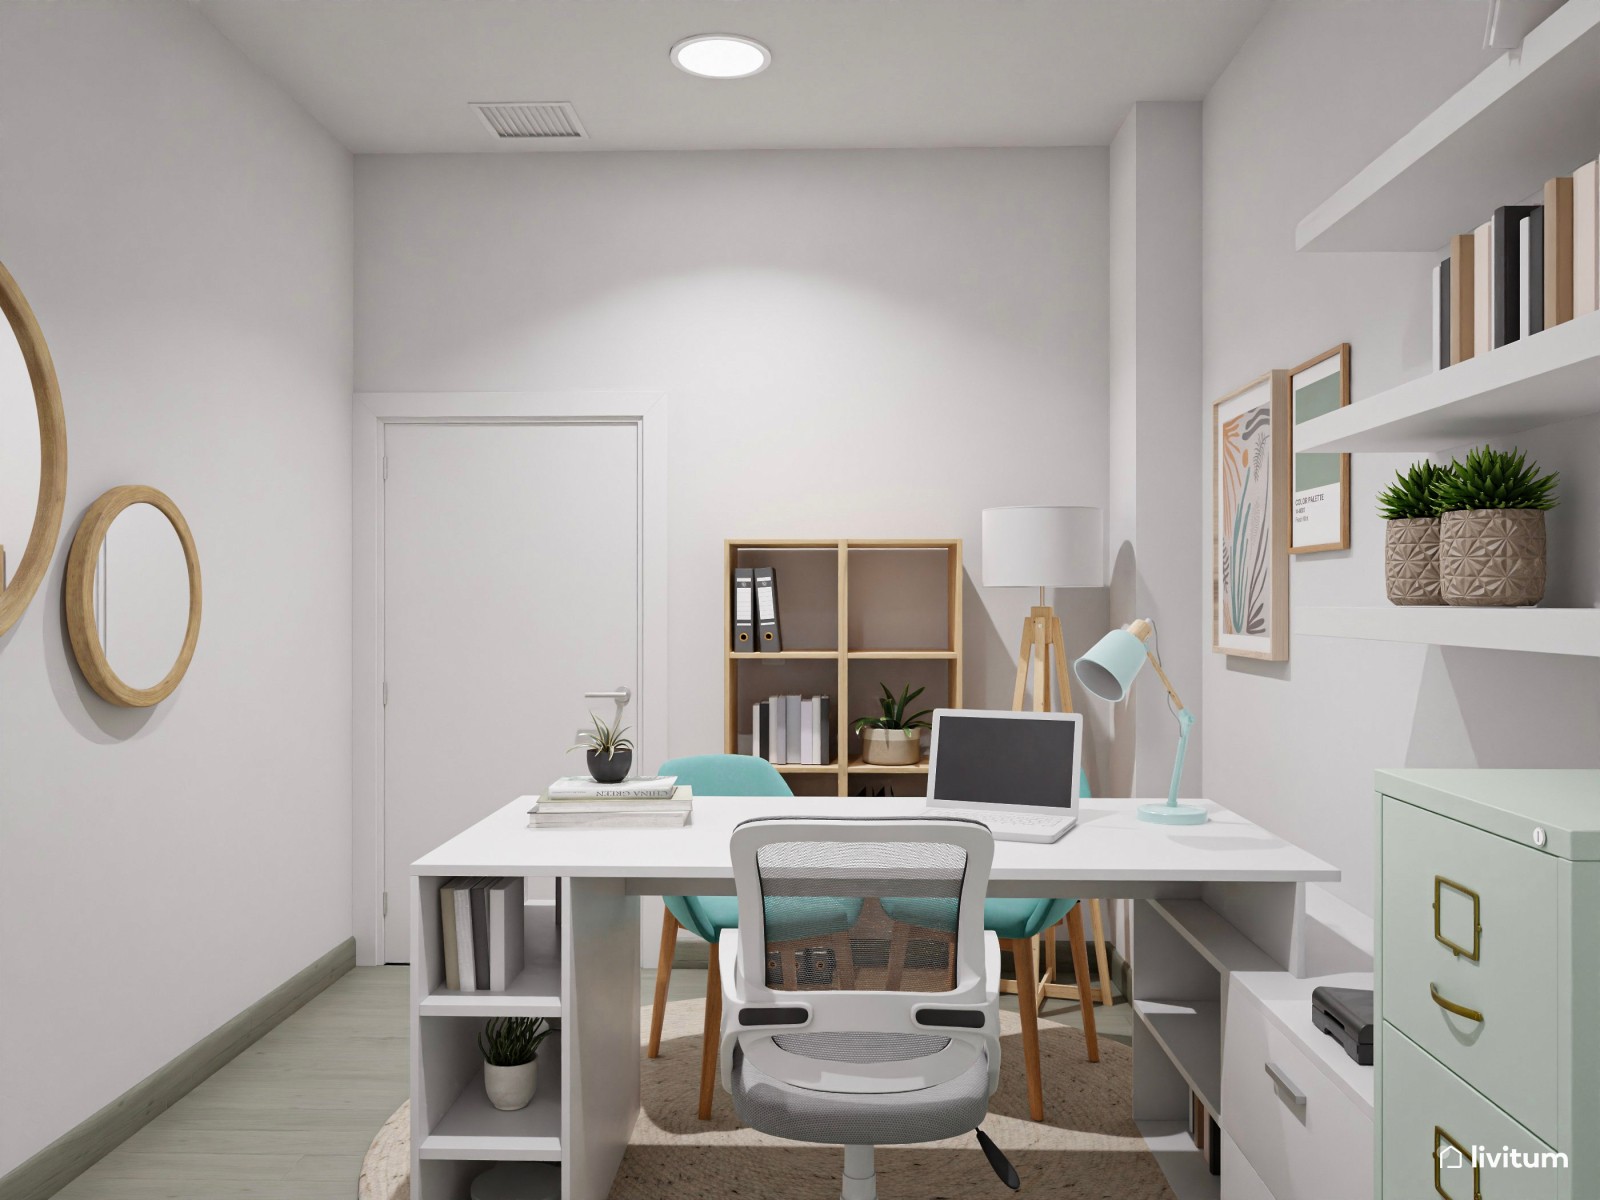 Despacho moderno en blanco y azul turquesa 